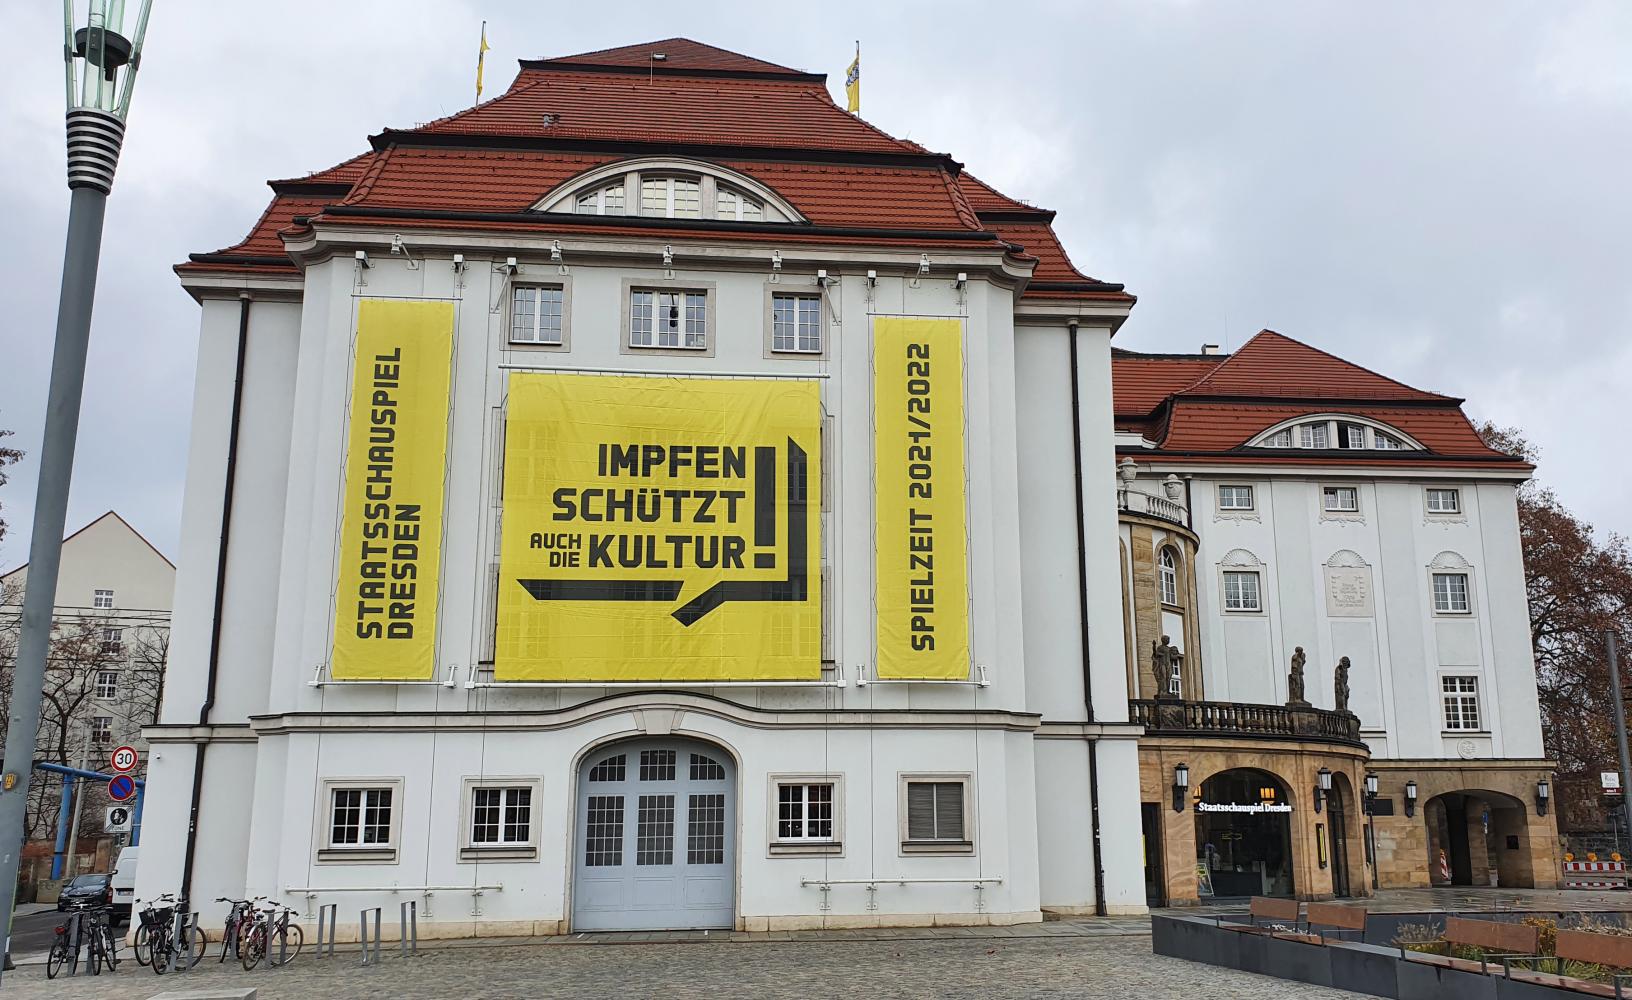 Das Staatsschauspiel Dresden macht mit bei der Plakataktion "Impfen schützt auch die Kultur"